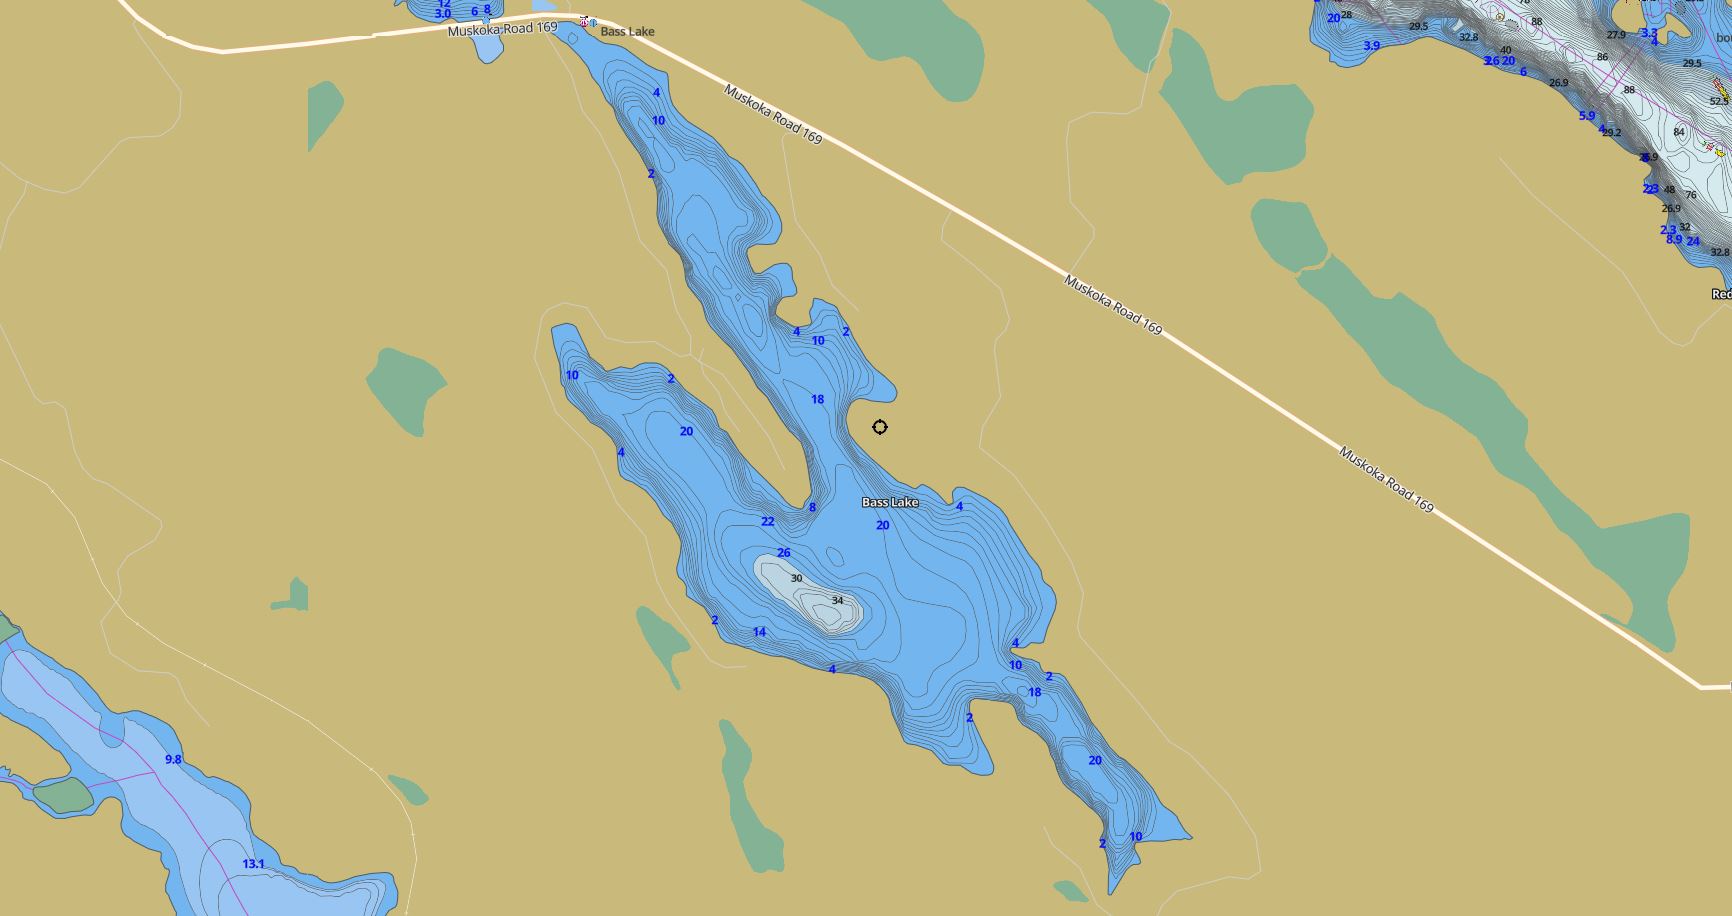 Contour Map of Bass Lake in Municipality of Muskoka Lakes and the District of Muskoka